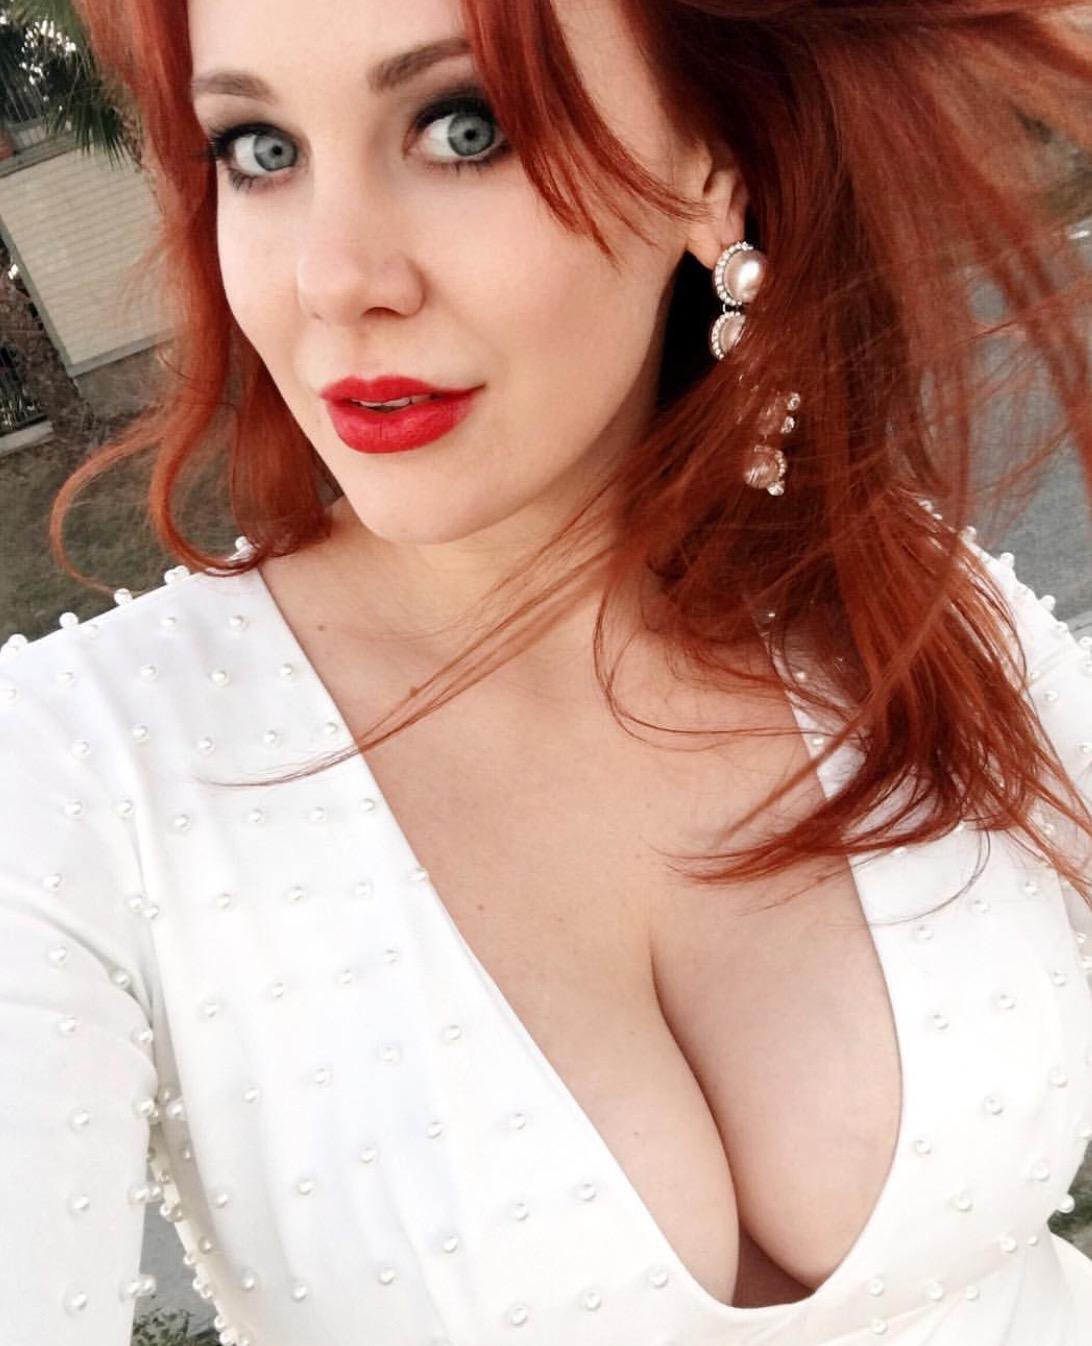 Redhead bib boobs